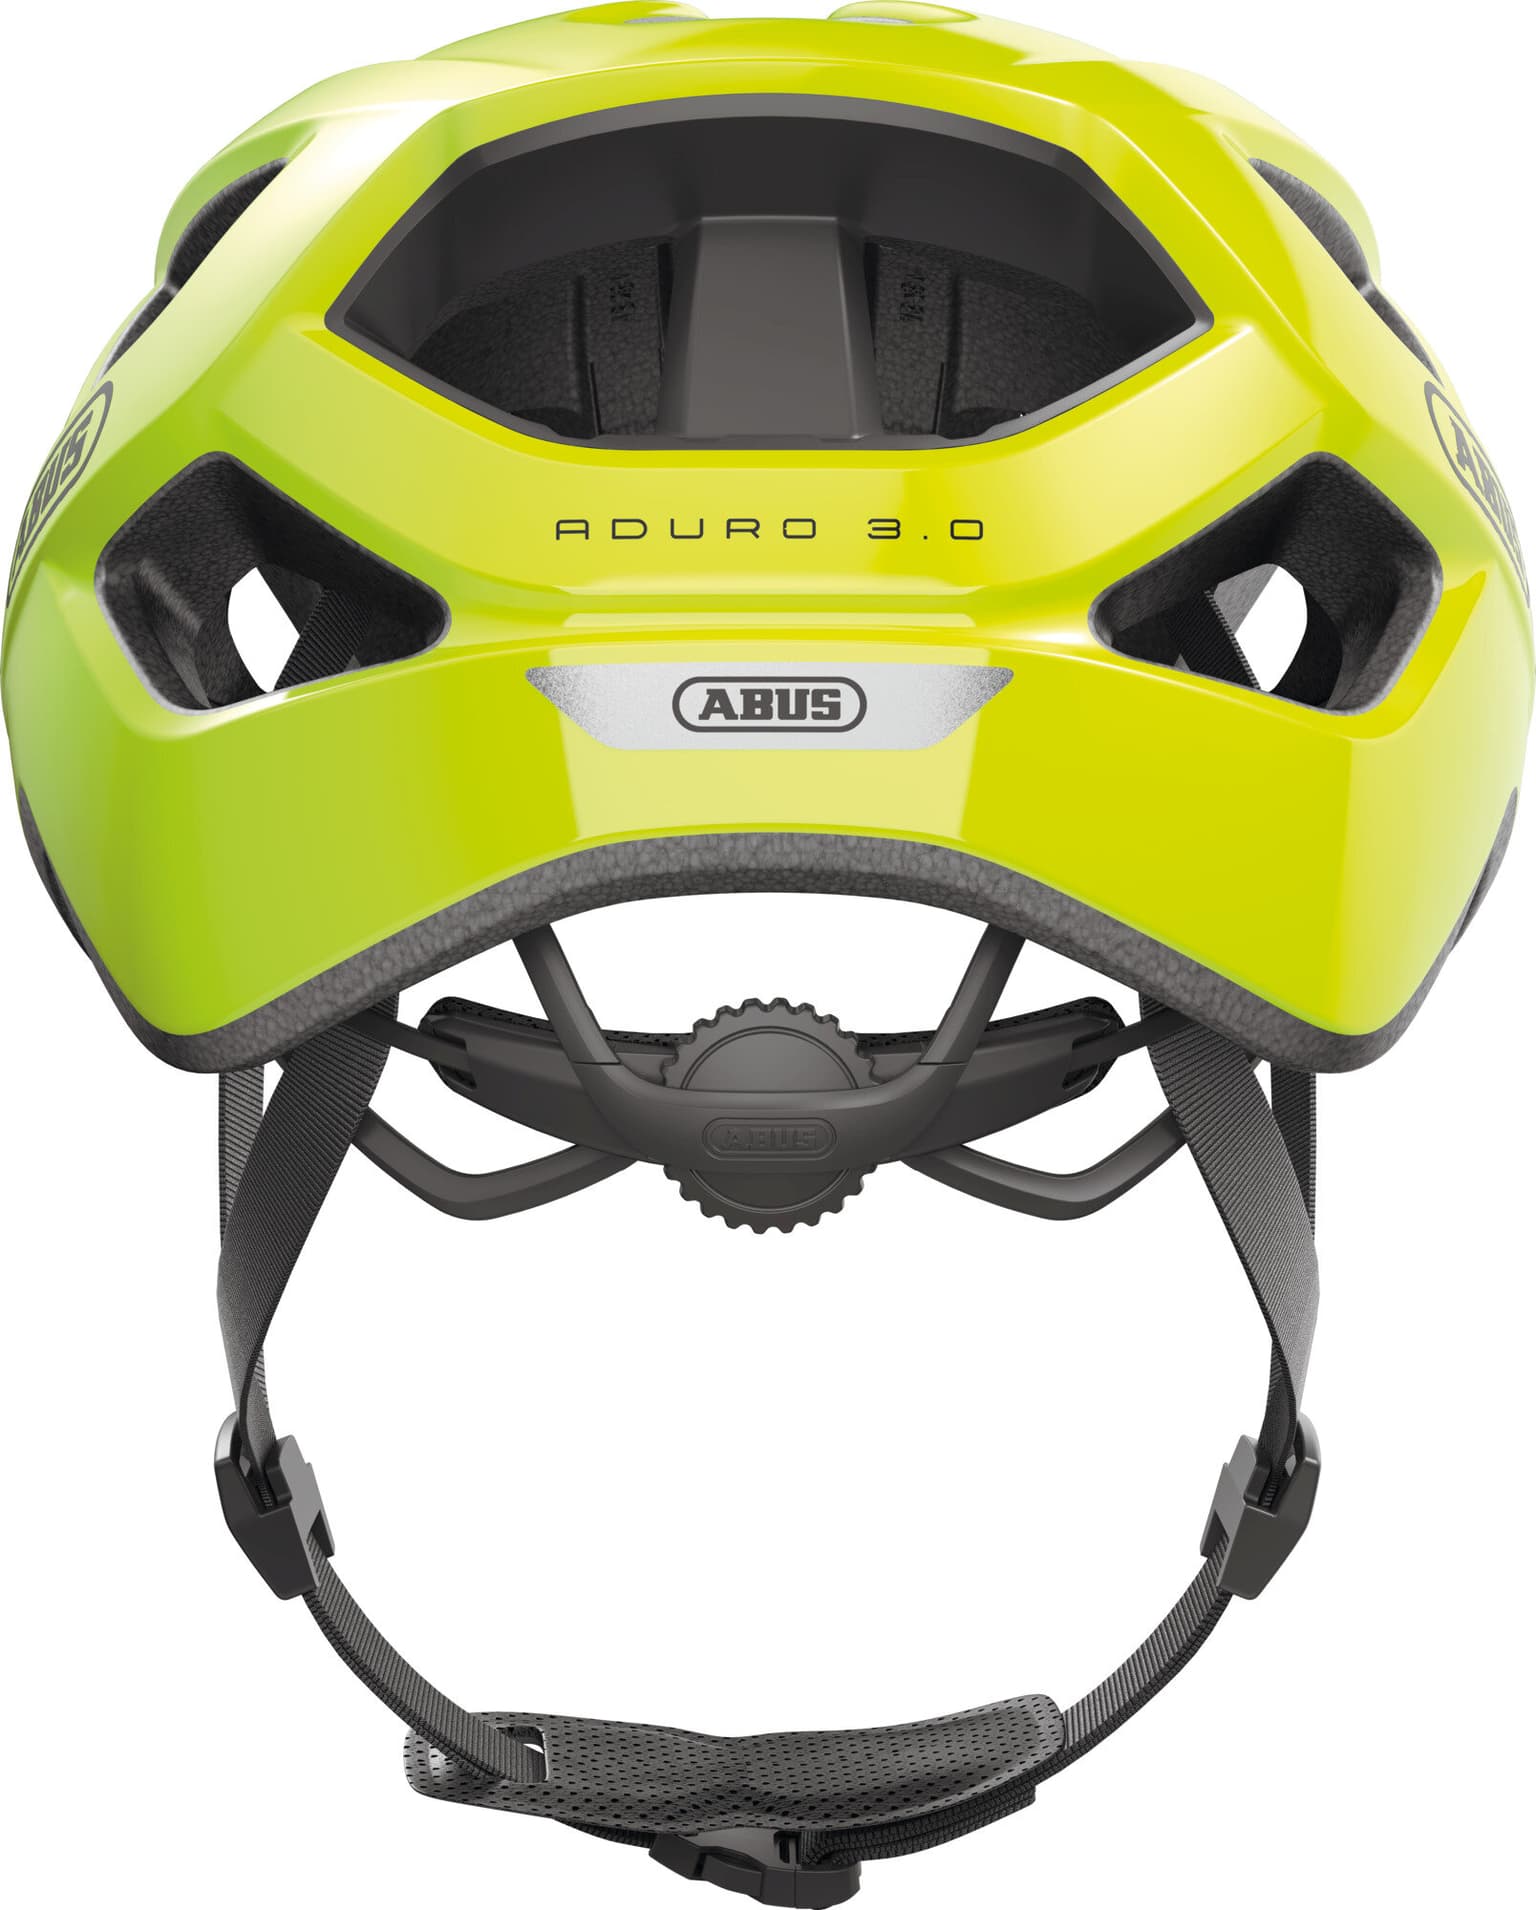 Abus Abus Aduro 3.0 Casque de vélo jaune-neon 5